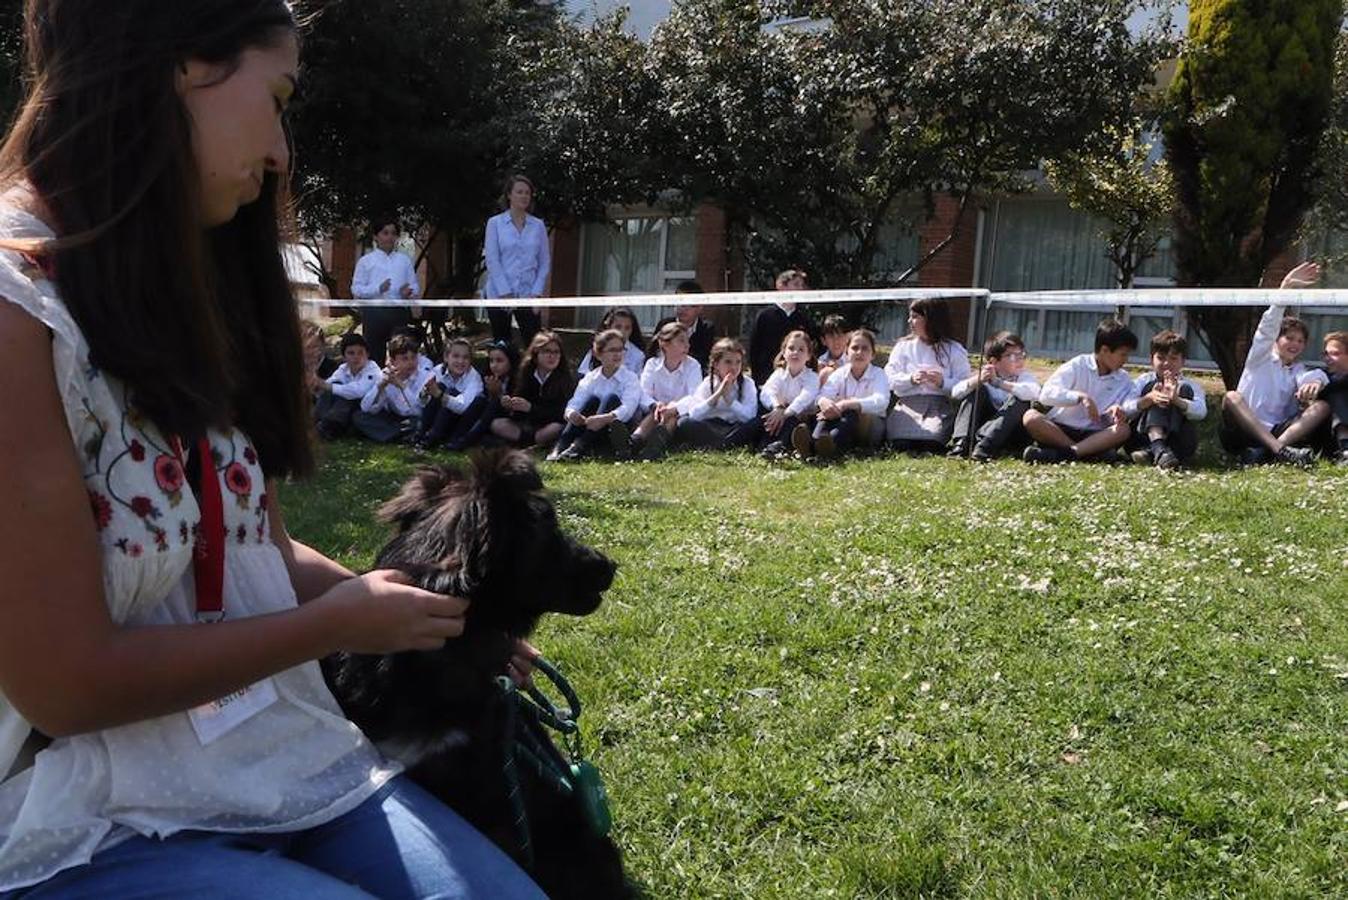 Los escolares del Palacio de Granda comparten experiencias con los perros. La importancia de darles otra oportunidad y estar con ellos en todo momento.